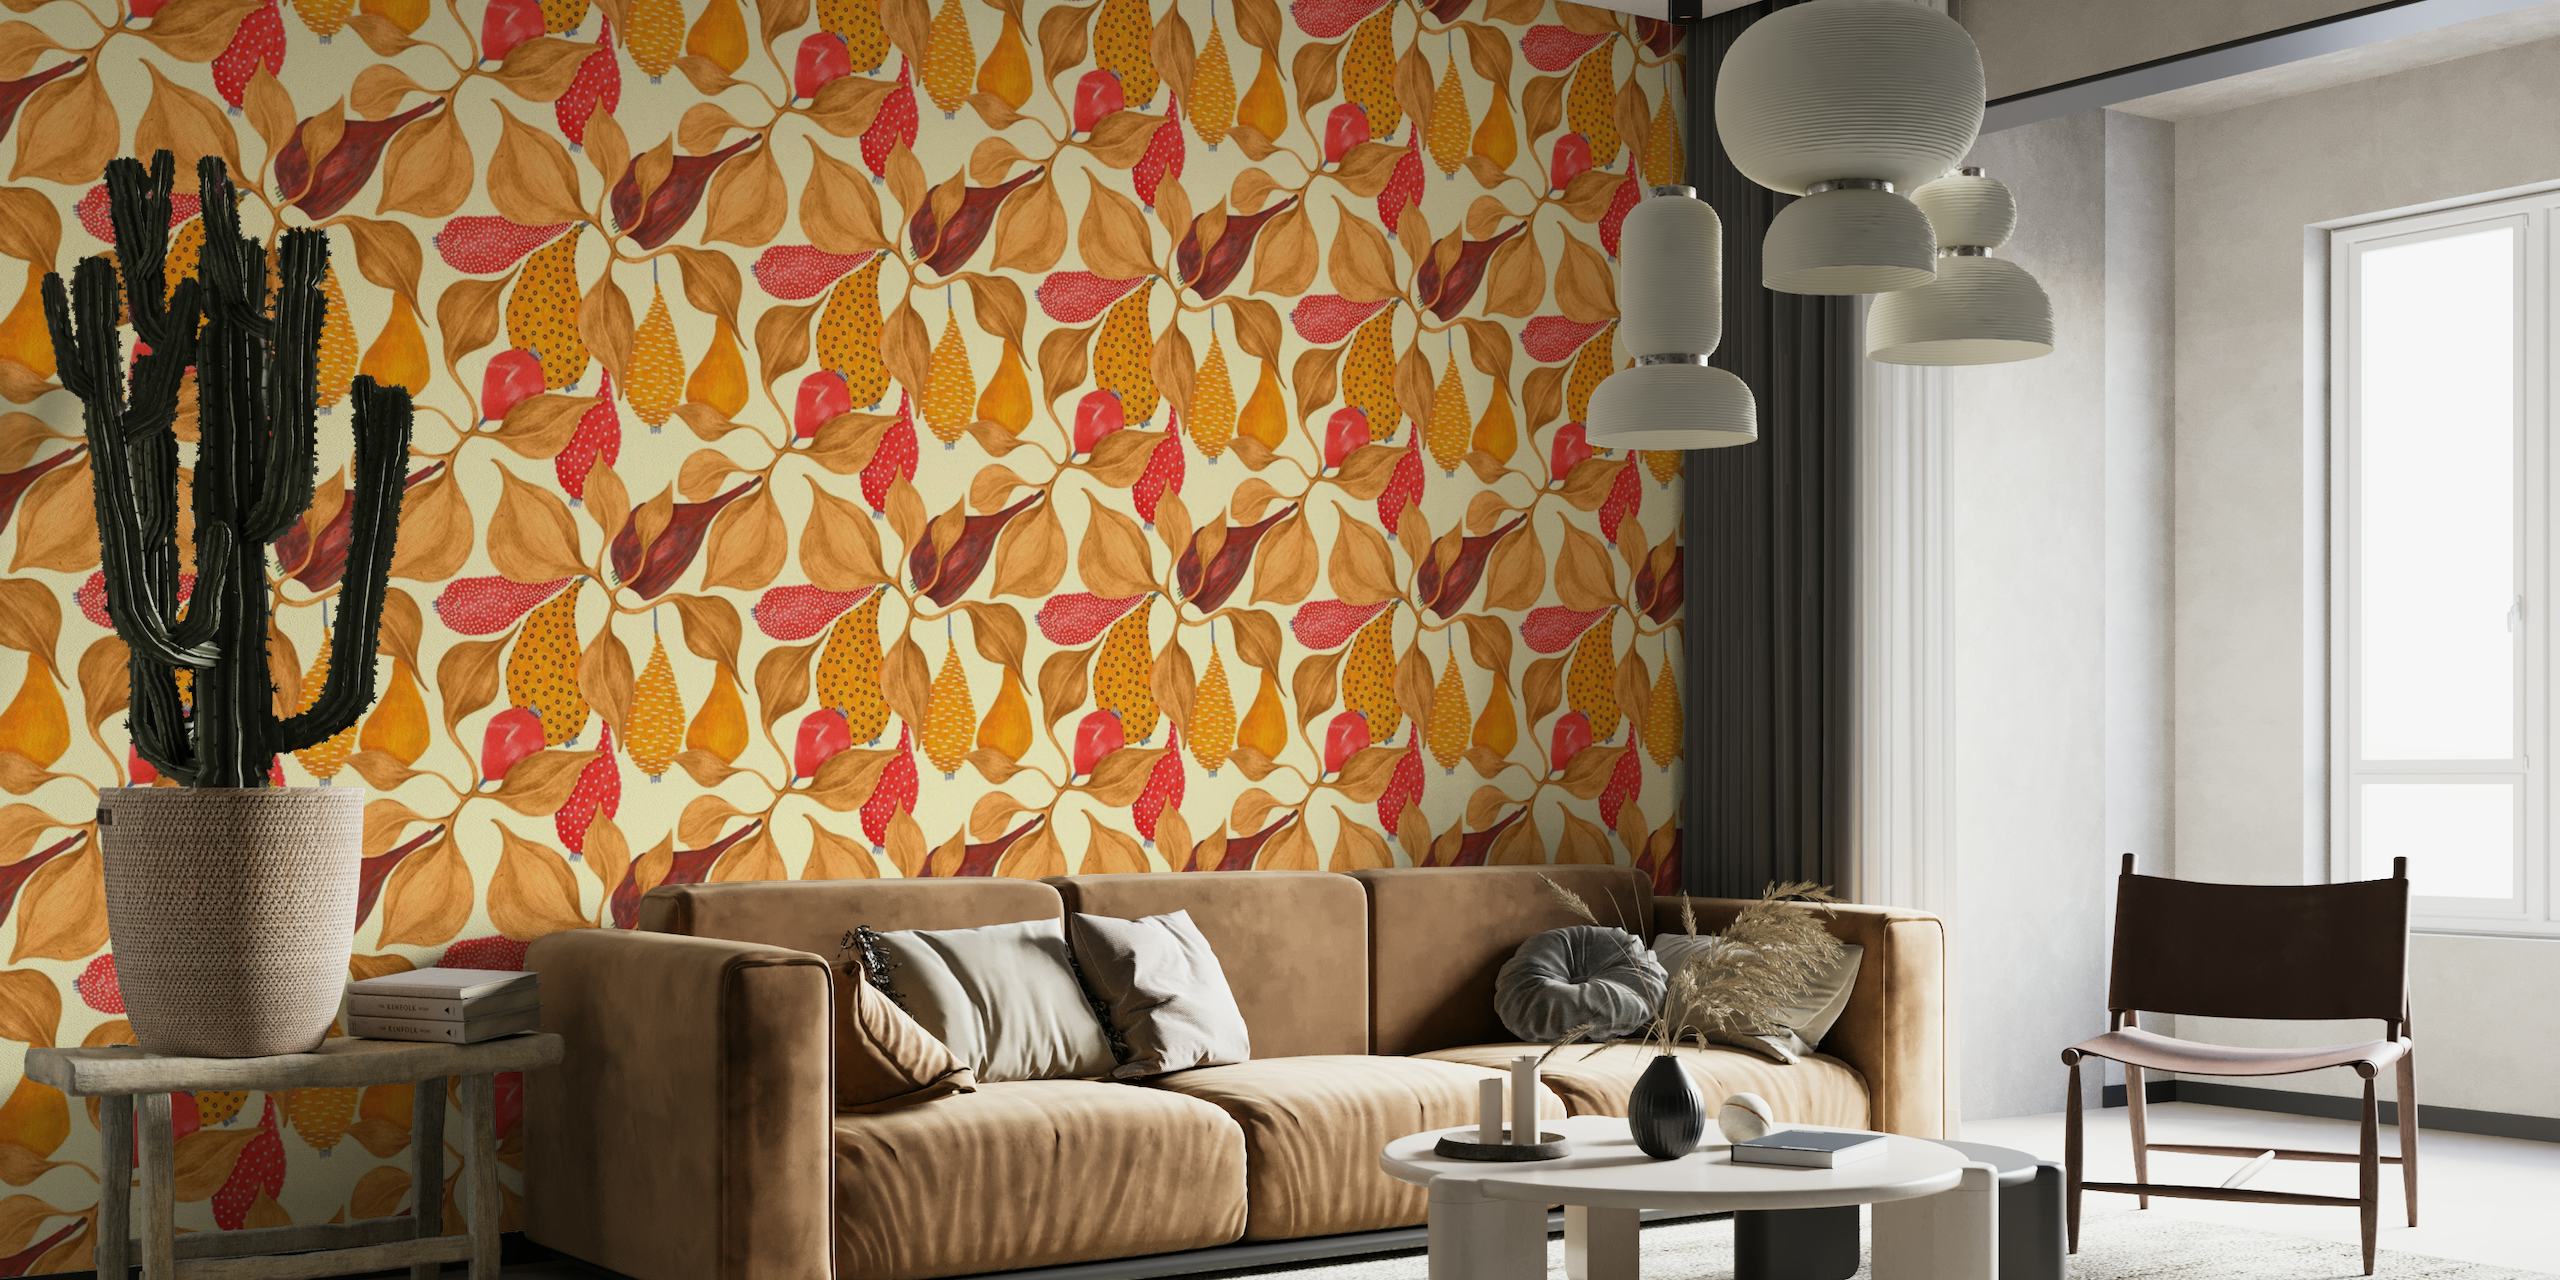 Fruta wallpaper